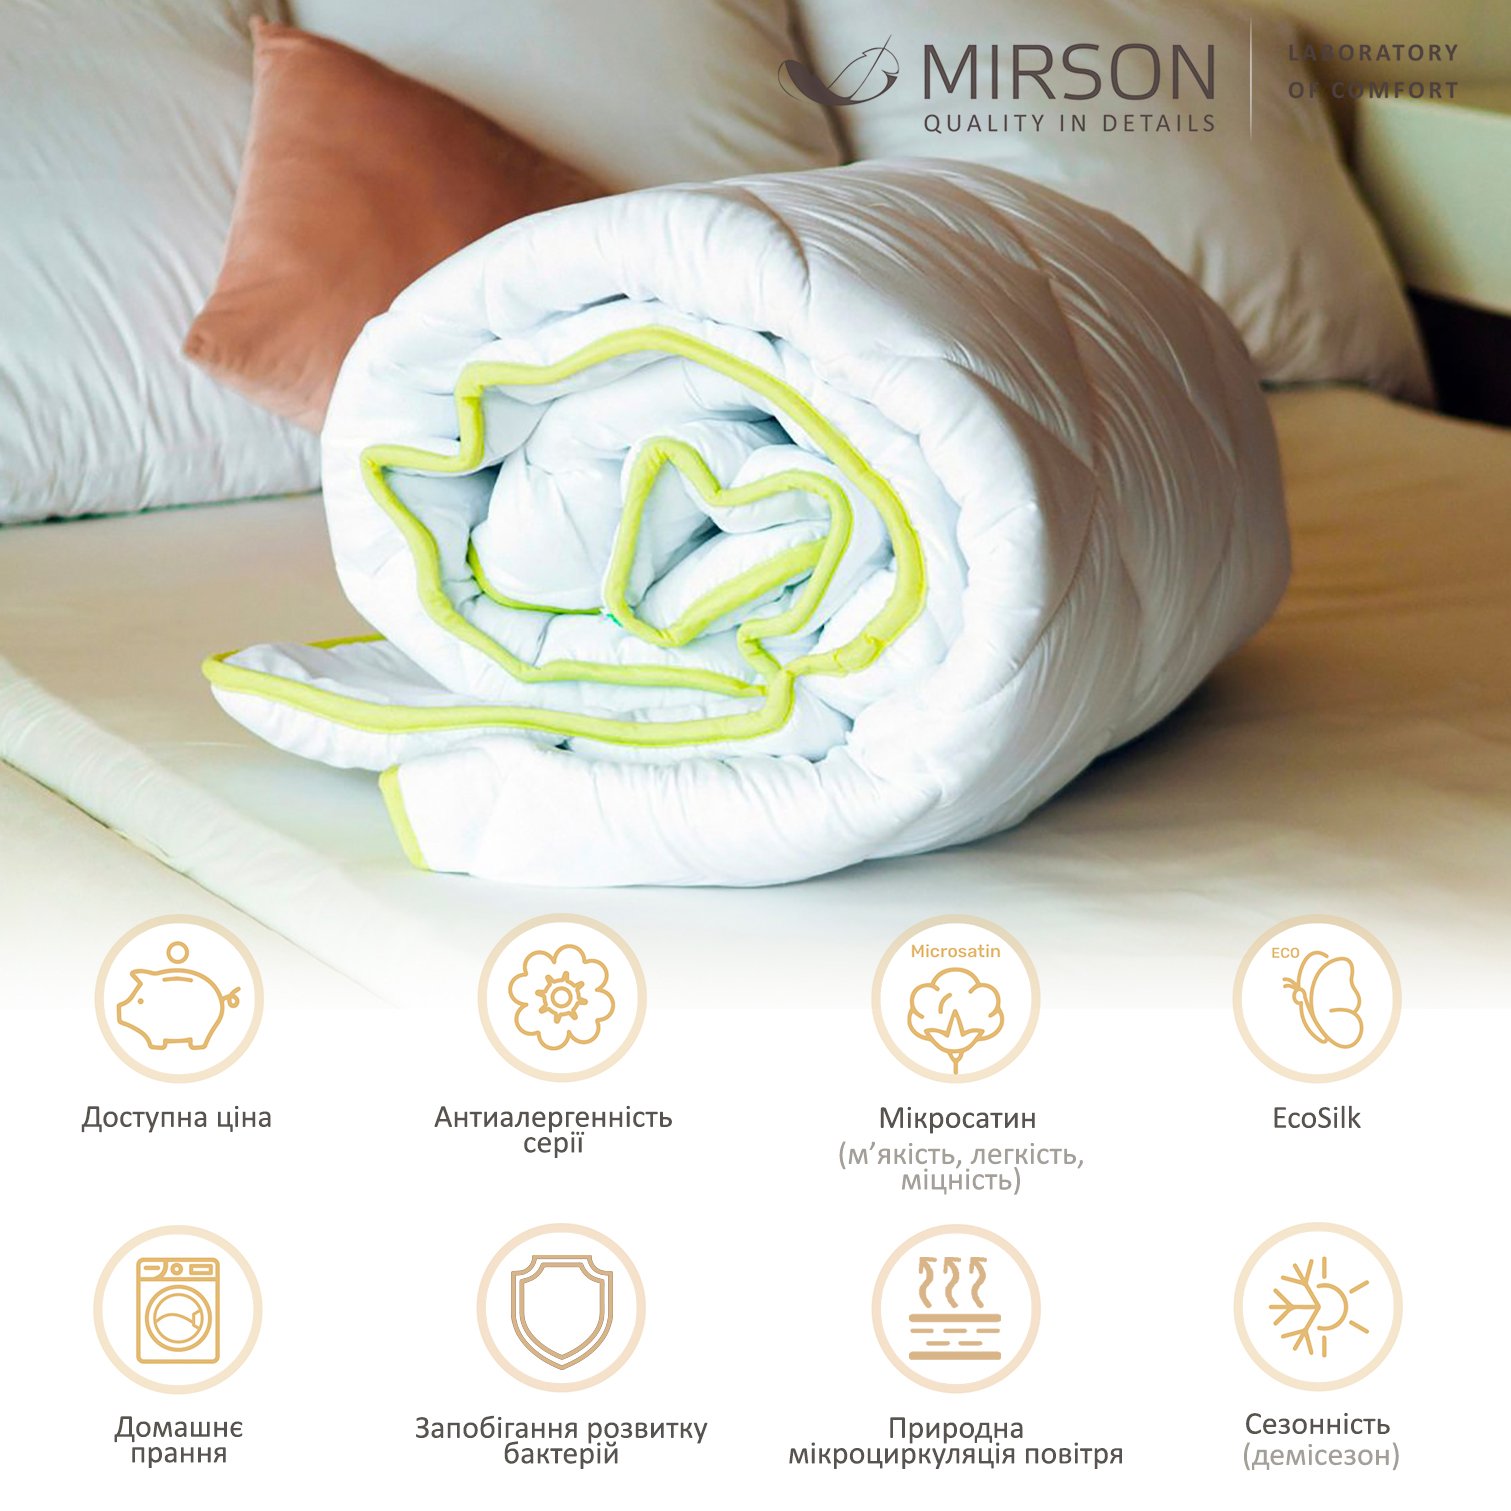 Одеяло антиаллергенное MirSon EcoSilk №002, демисезонное, 220x240 см, белое - фото 4